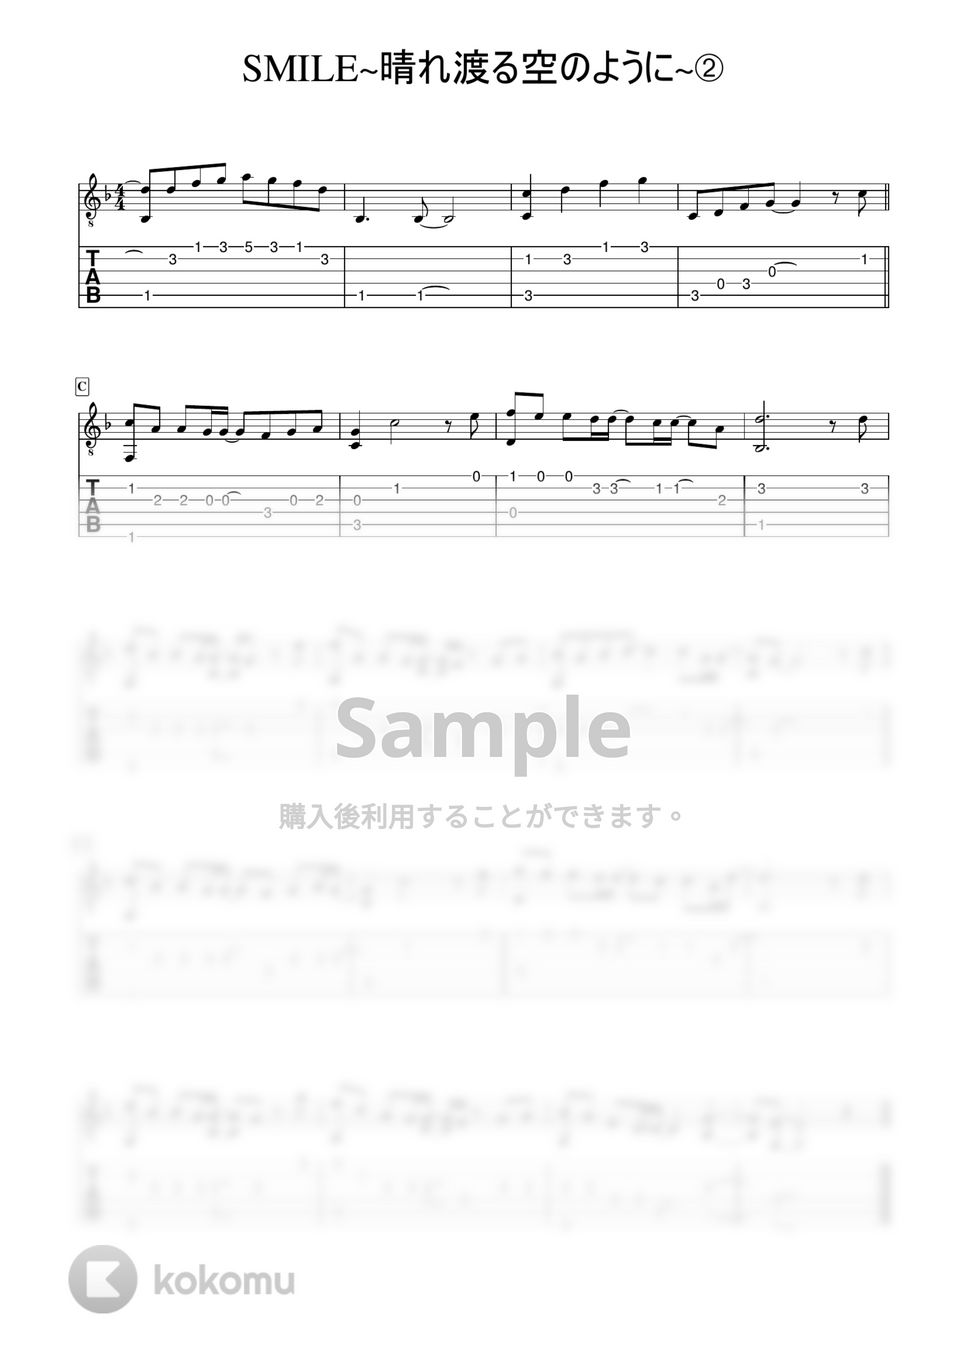 桑田佳祐 - SMILE~晴れ渡る空のように~ (かんたんソロギター) by 早乙女浩司